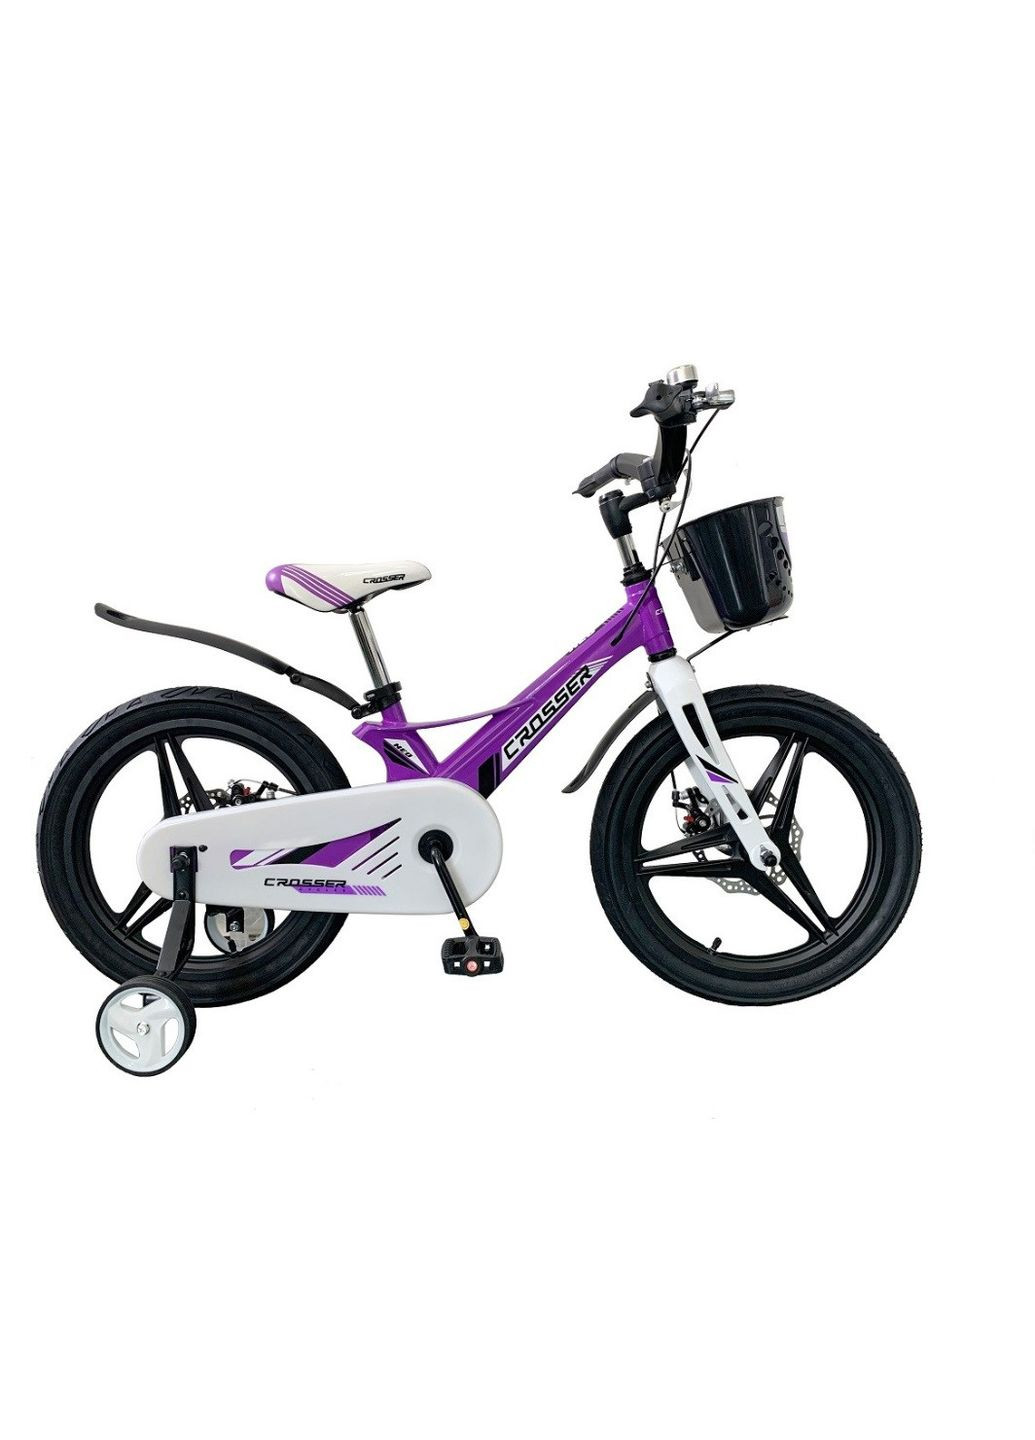 Детский велосипед HUNTER NEO Premium магниевый: стильный и надежный Фиолетовый, 16 Crosser (267810135)